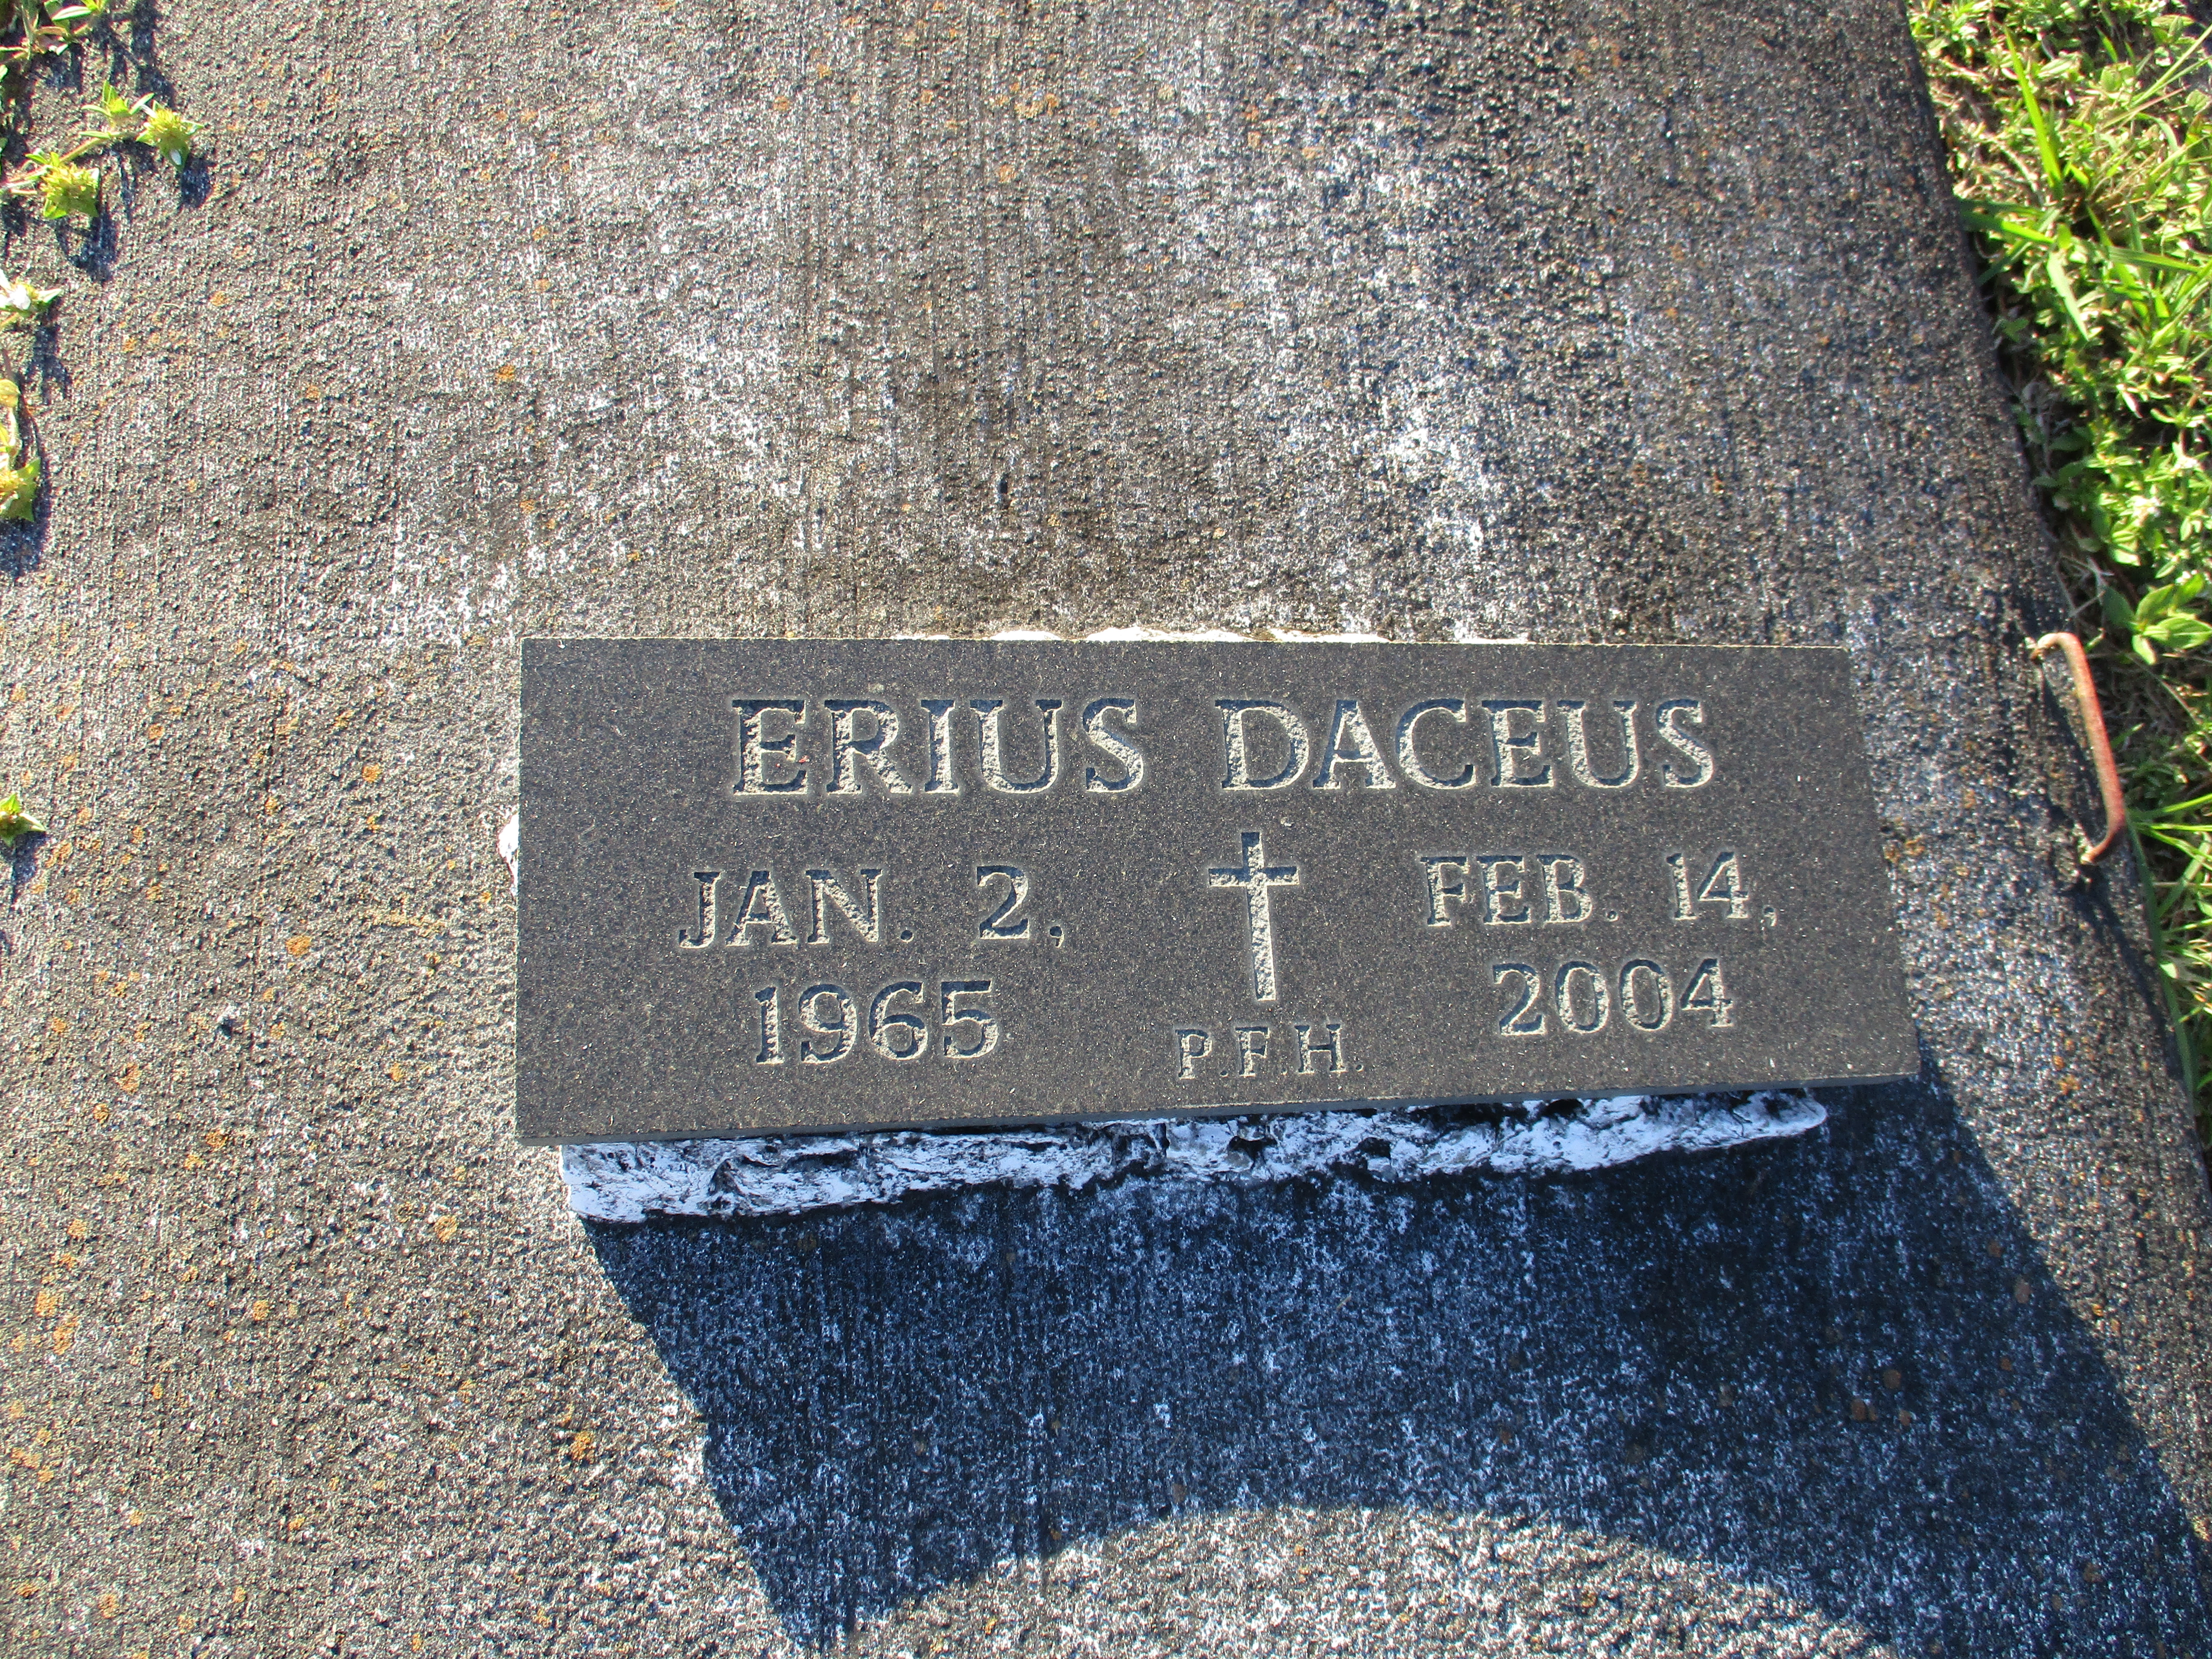 Erius Daceus